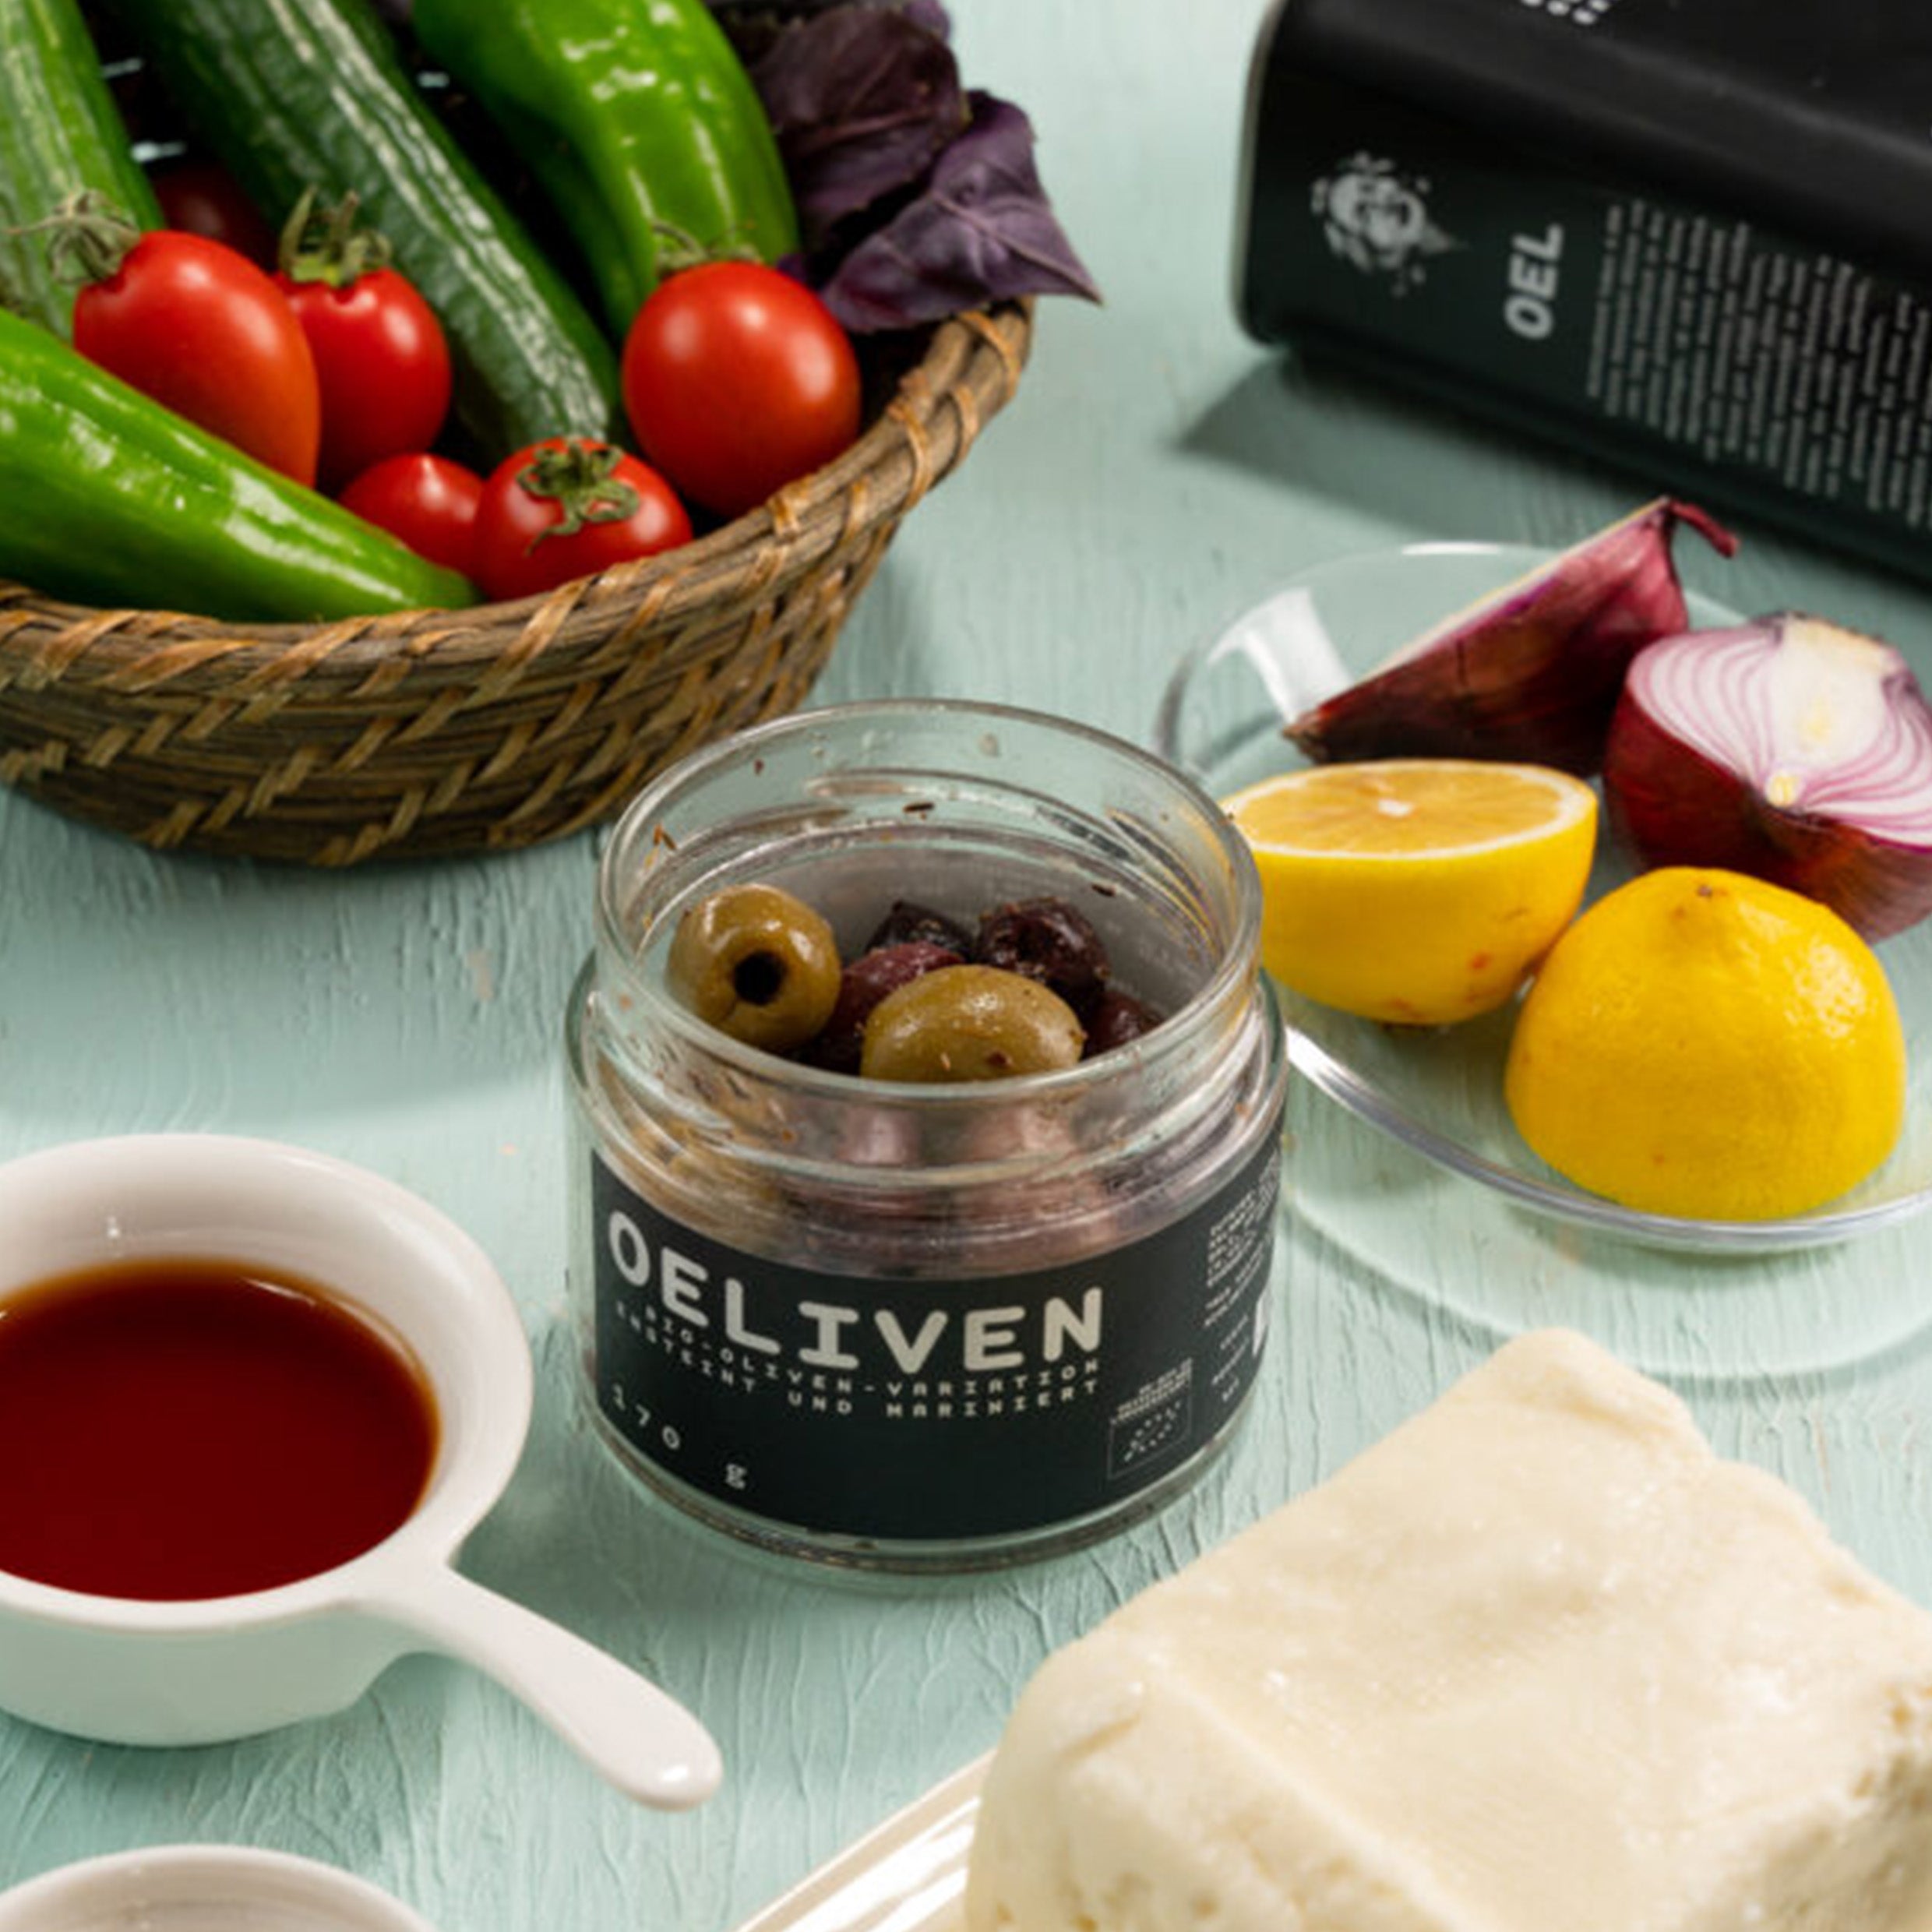 OELiven Mix-Variation 500 g - Gemischte Bio Oliven mit Kräutern